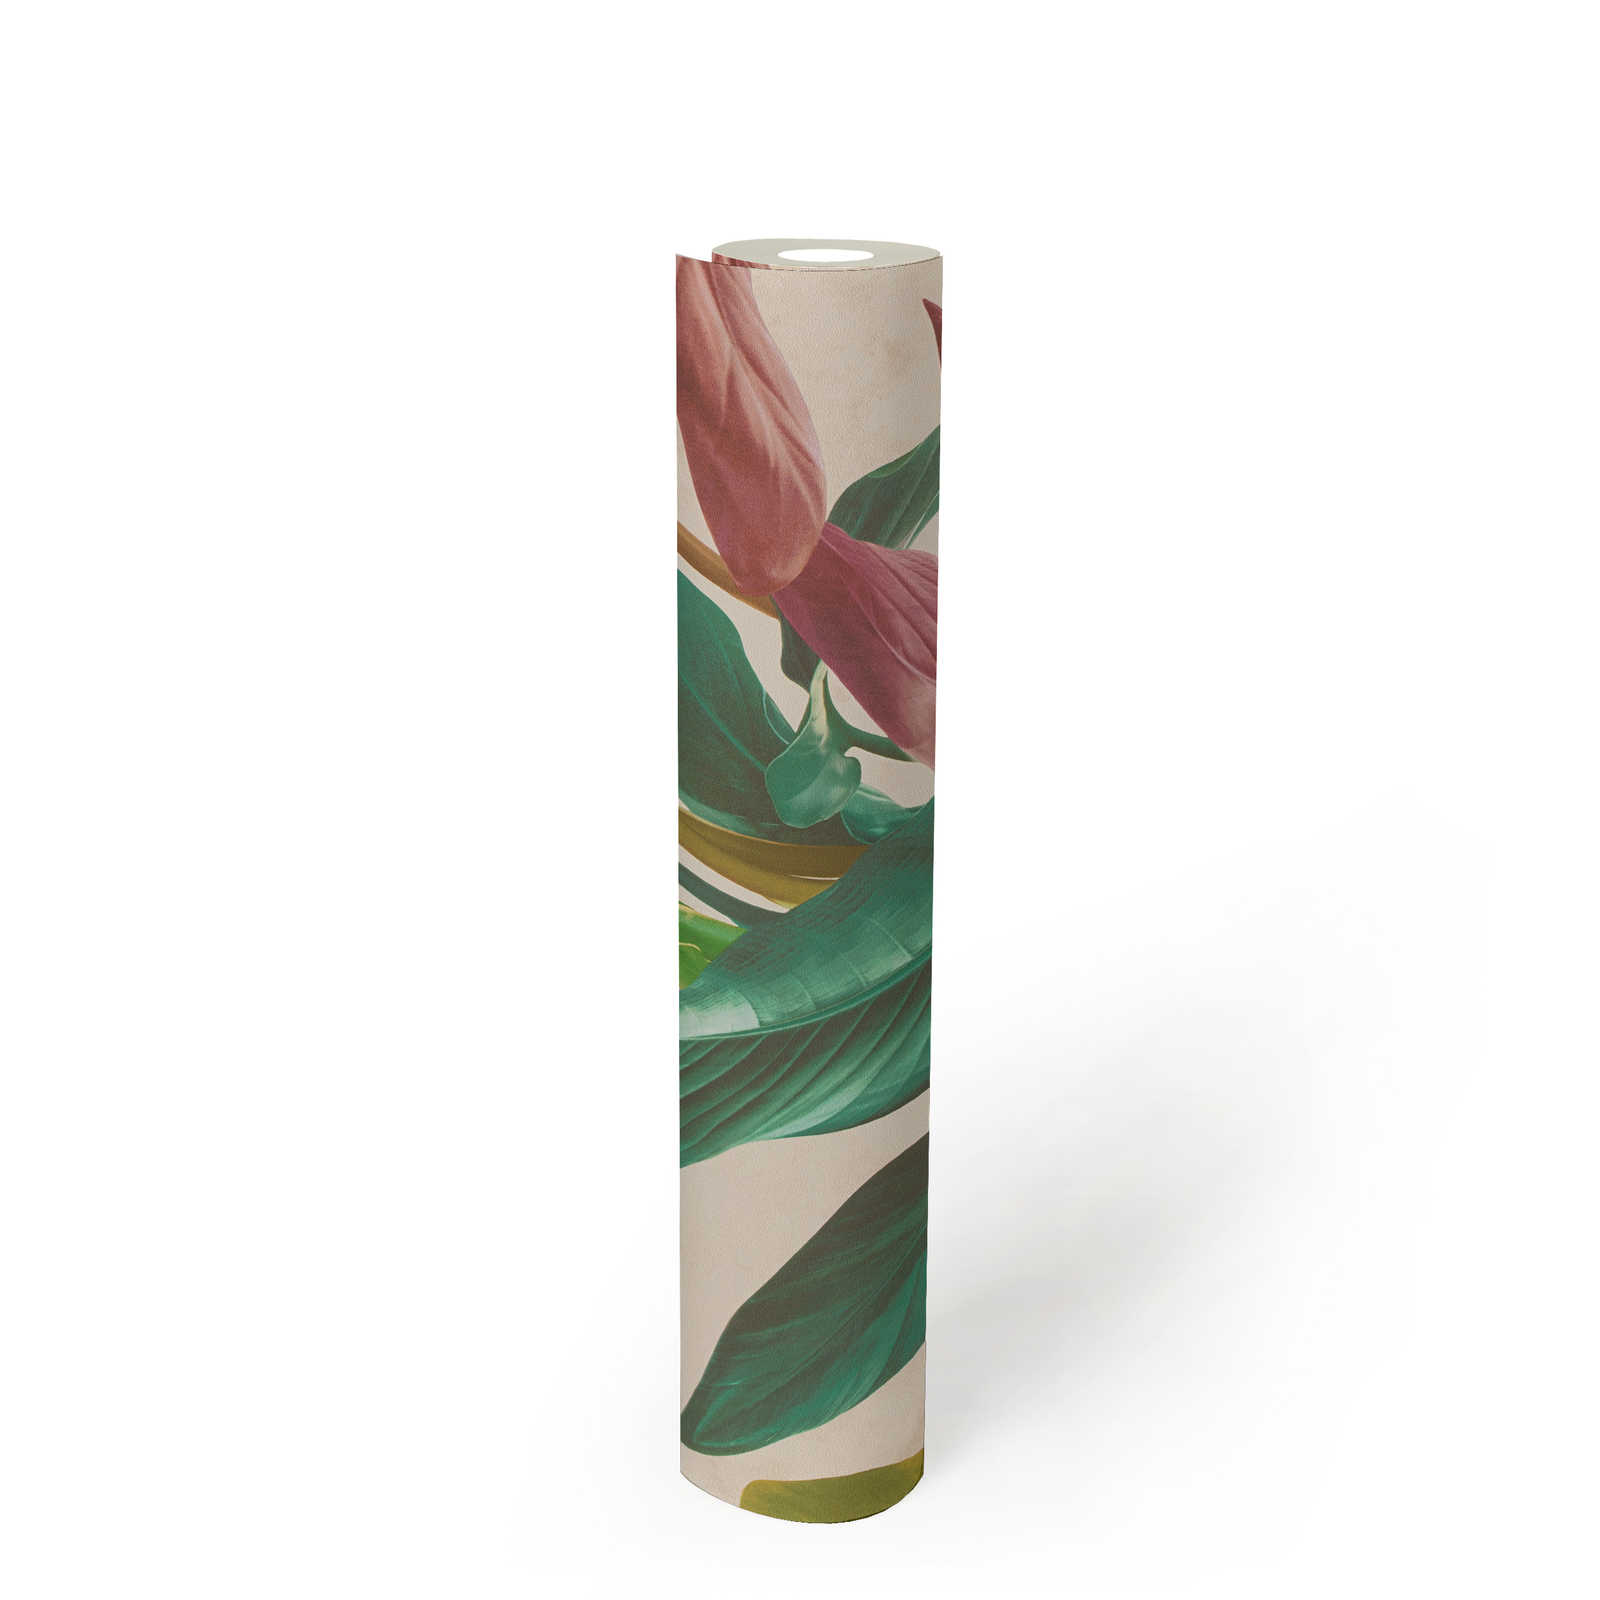             Papel pintado con diseño de hojas en colores vivos - colorido, crema, verde
        